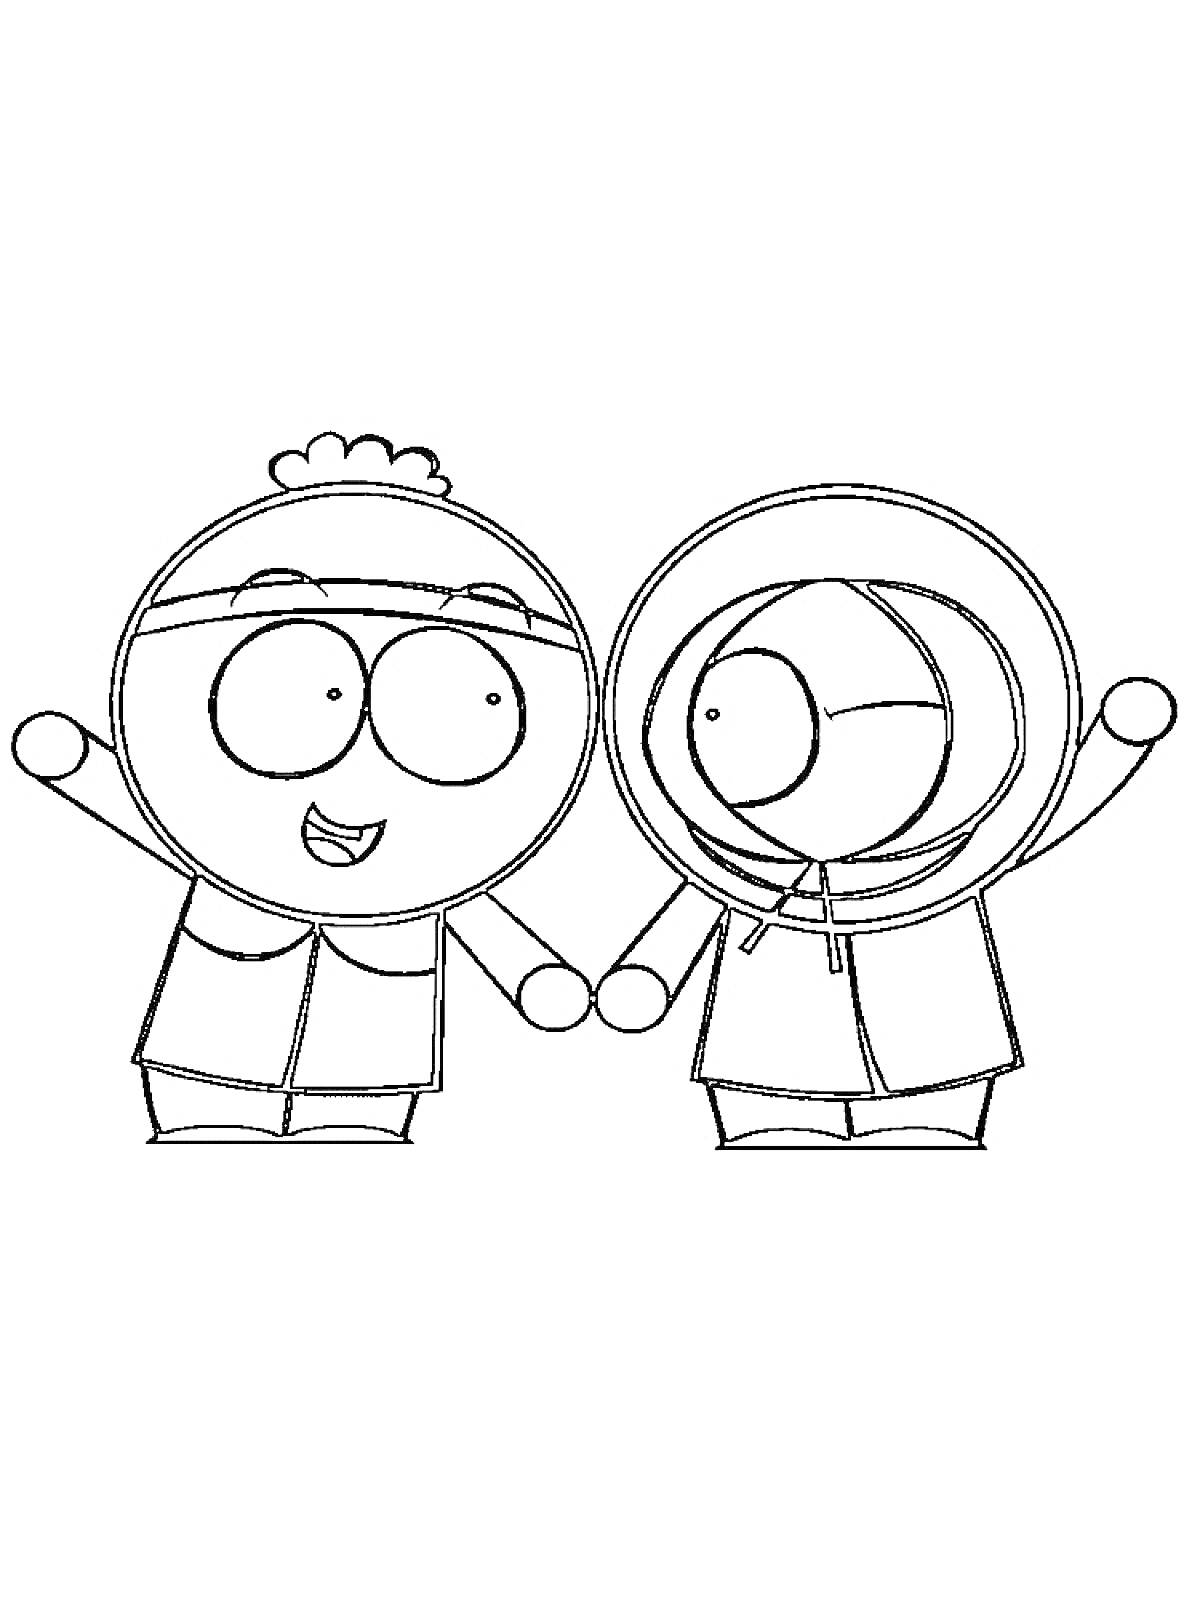 Раскраска Два персонажа Южного Парка, стоящие вместе и держащиеся за руки